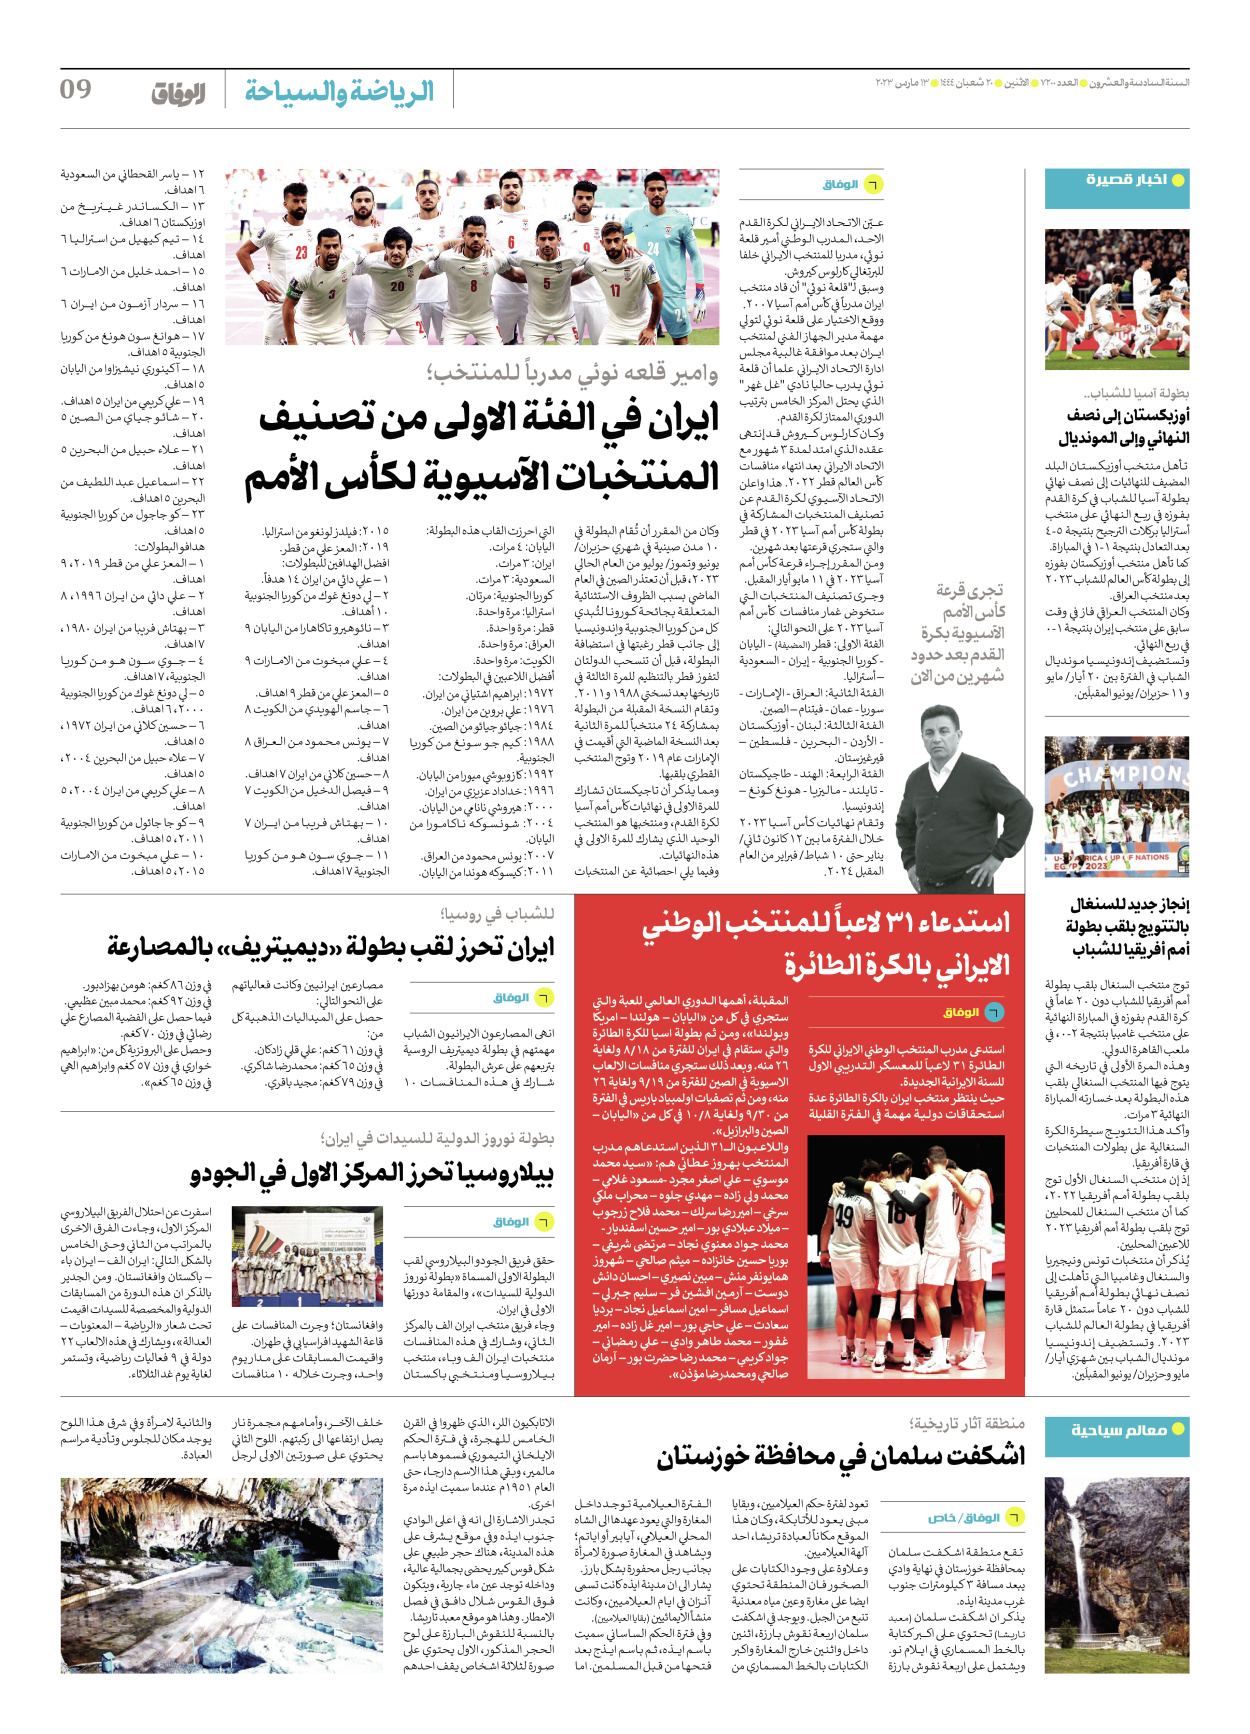 صحیفة ایران الدولیة الوفاق - العدد سبعة آلاف ومائتان - ١٣ مارس ٢٠٢٣ - الصفحة ۹